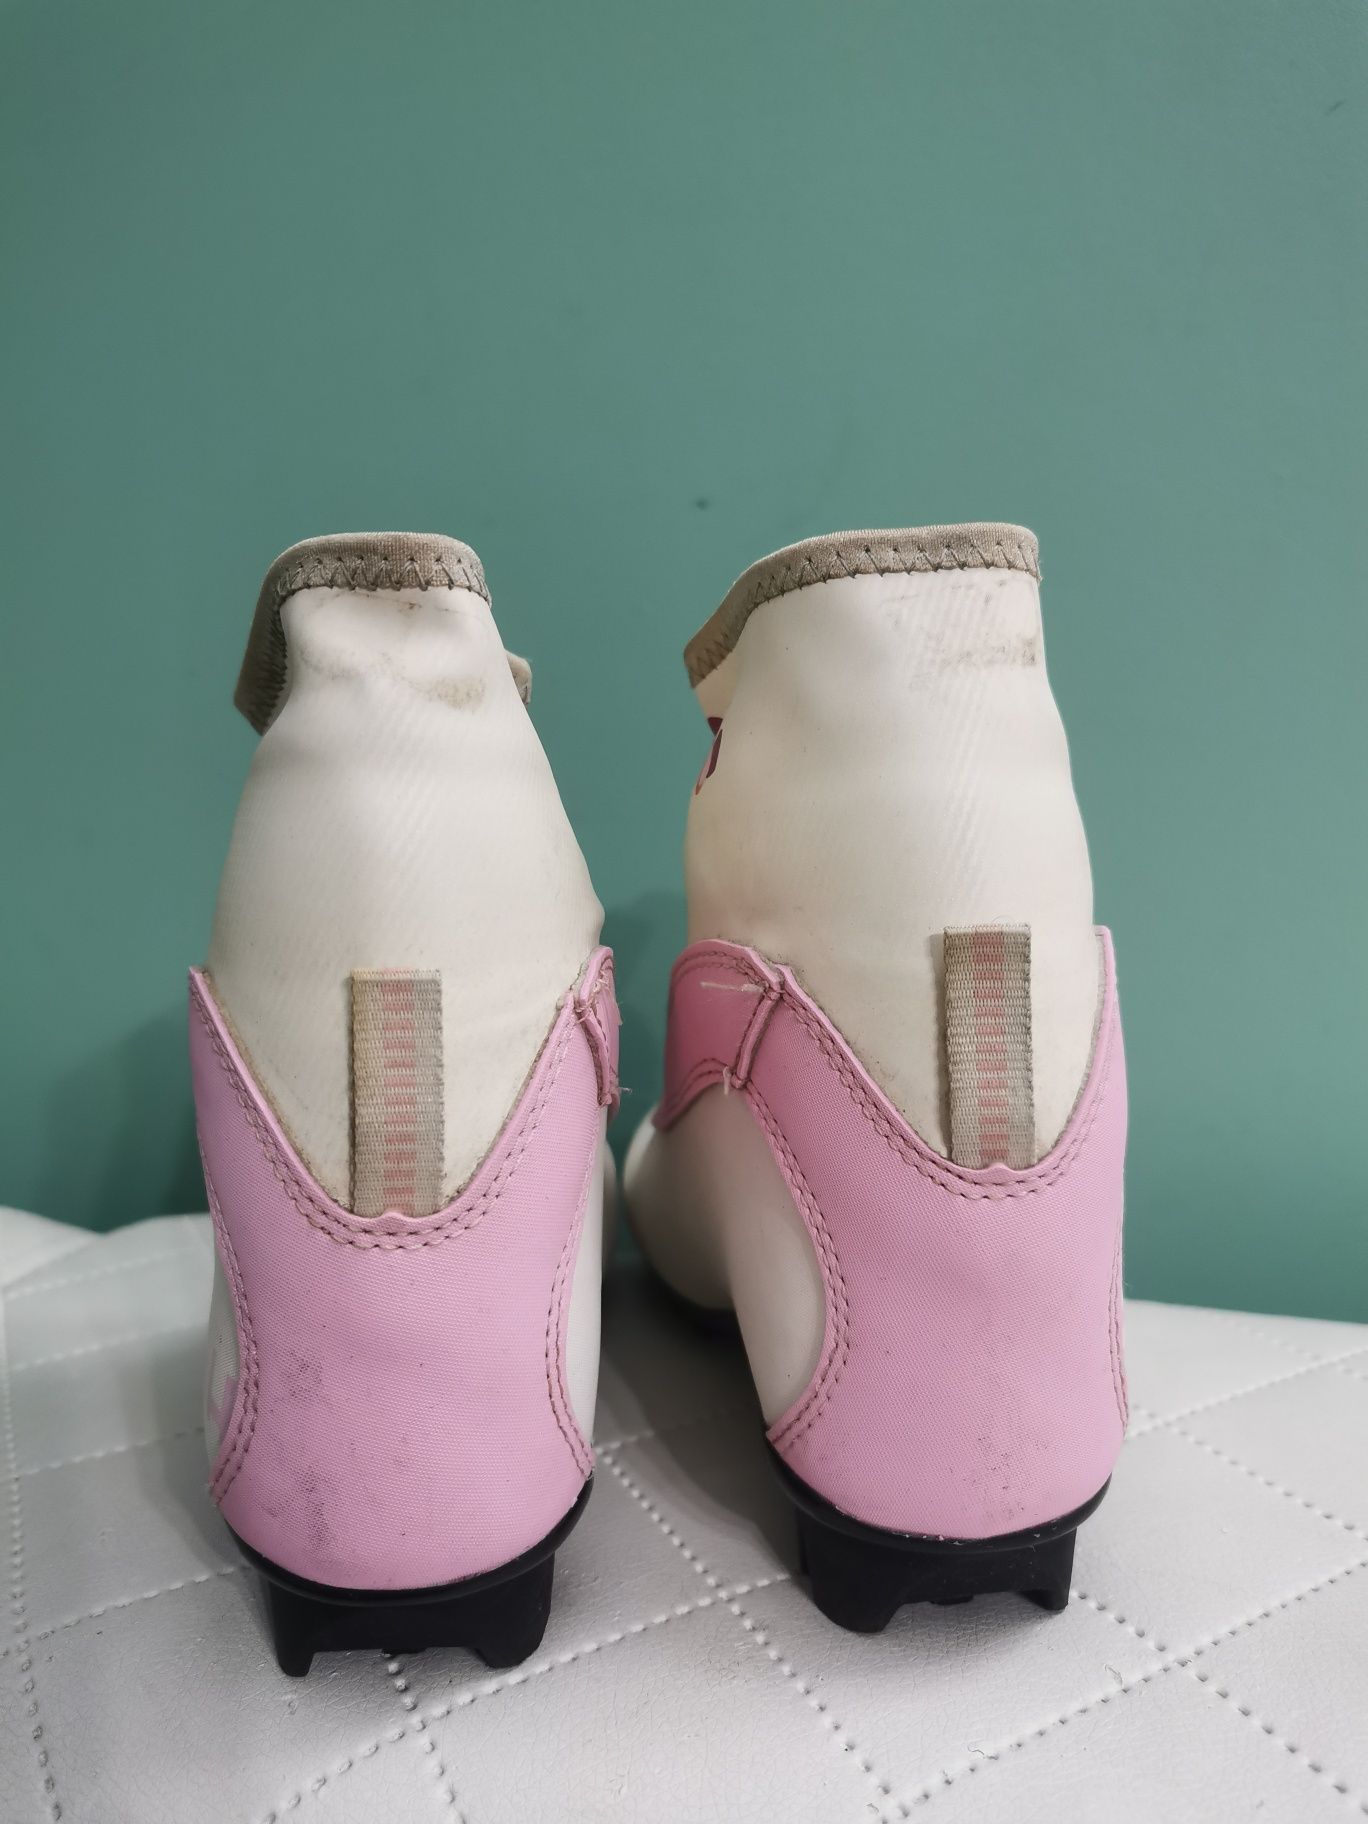 Buty do nart biegowych Rossignol roz. 31 NNN biało różowe